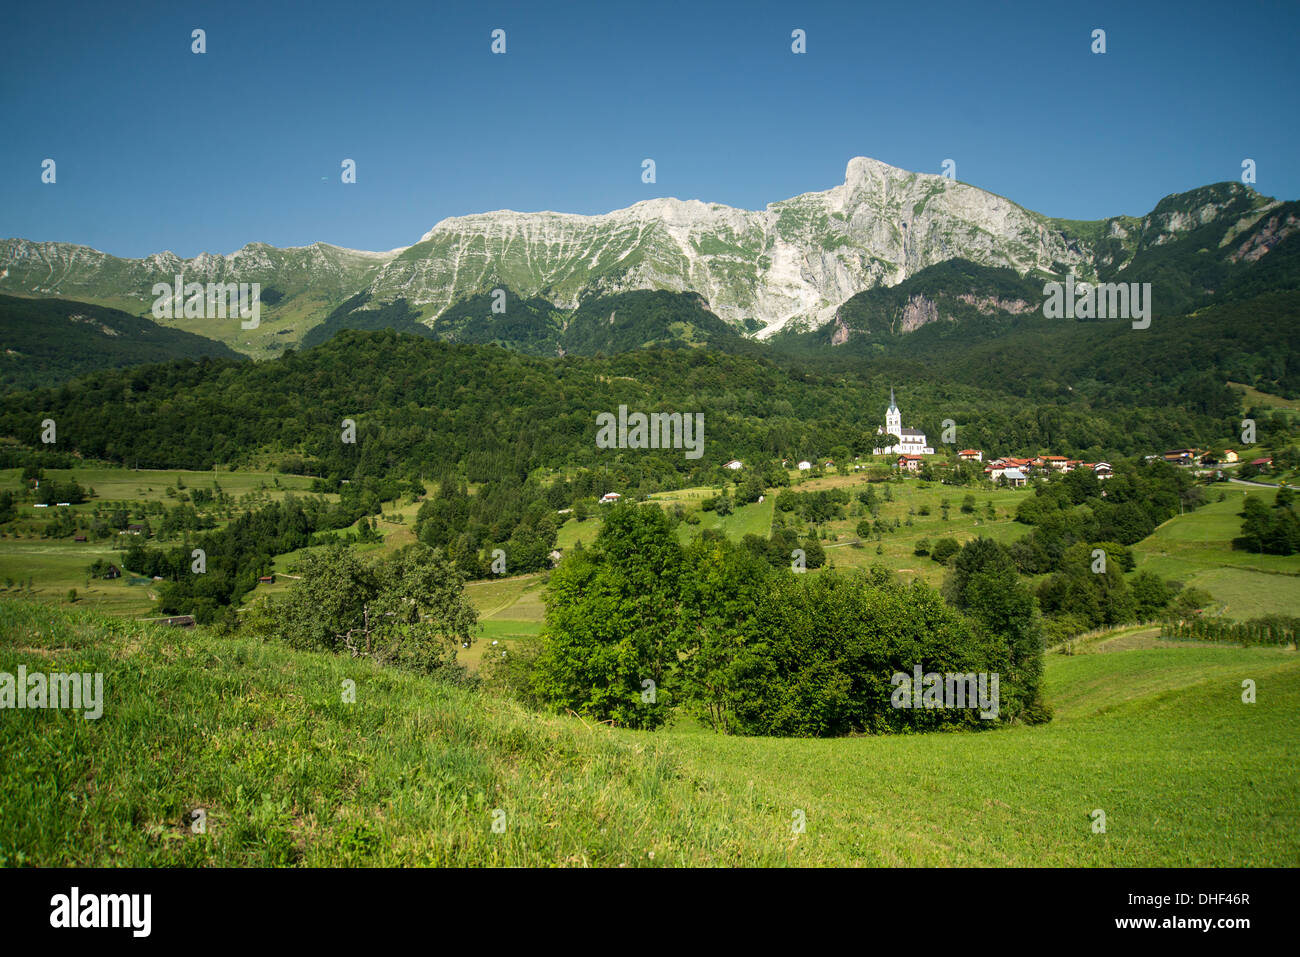 Little alpine village Stock Photo